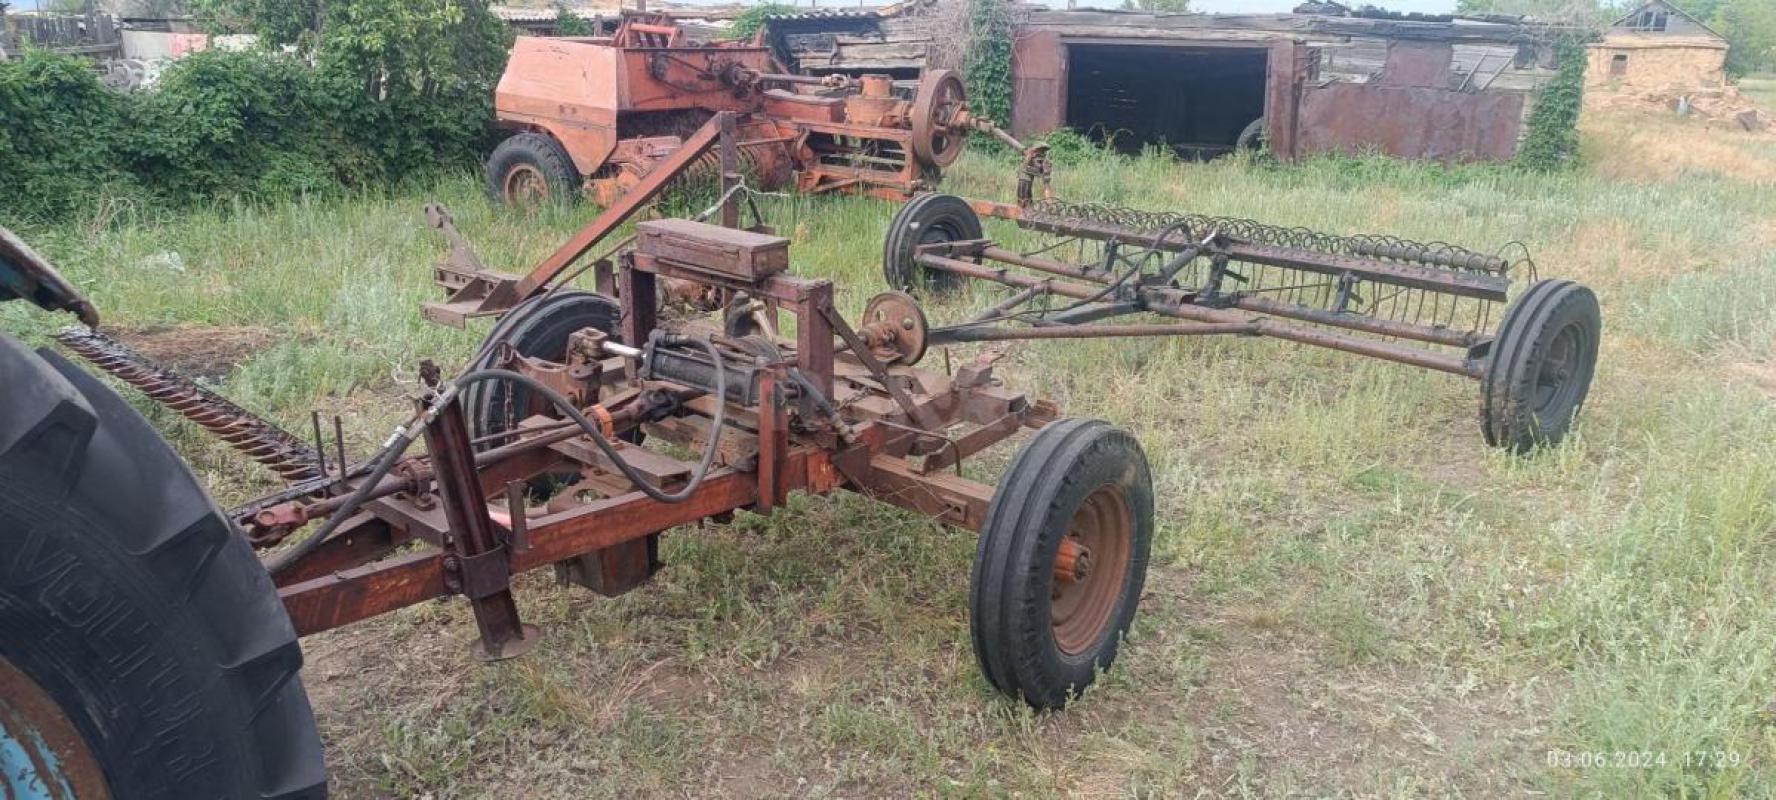 Трактор МТЗ на полном ходу с косилкой и граблями, находится в ясненьском районе, село каракуль, возм - Орск